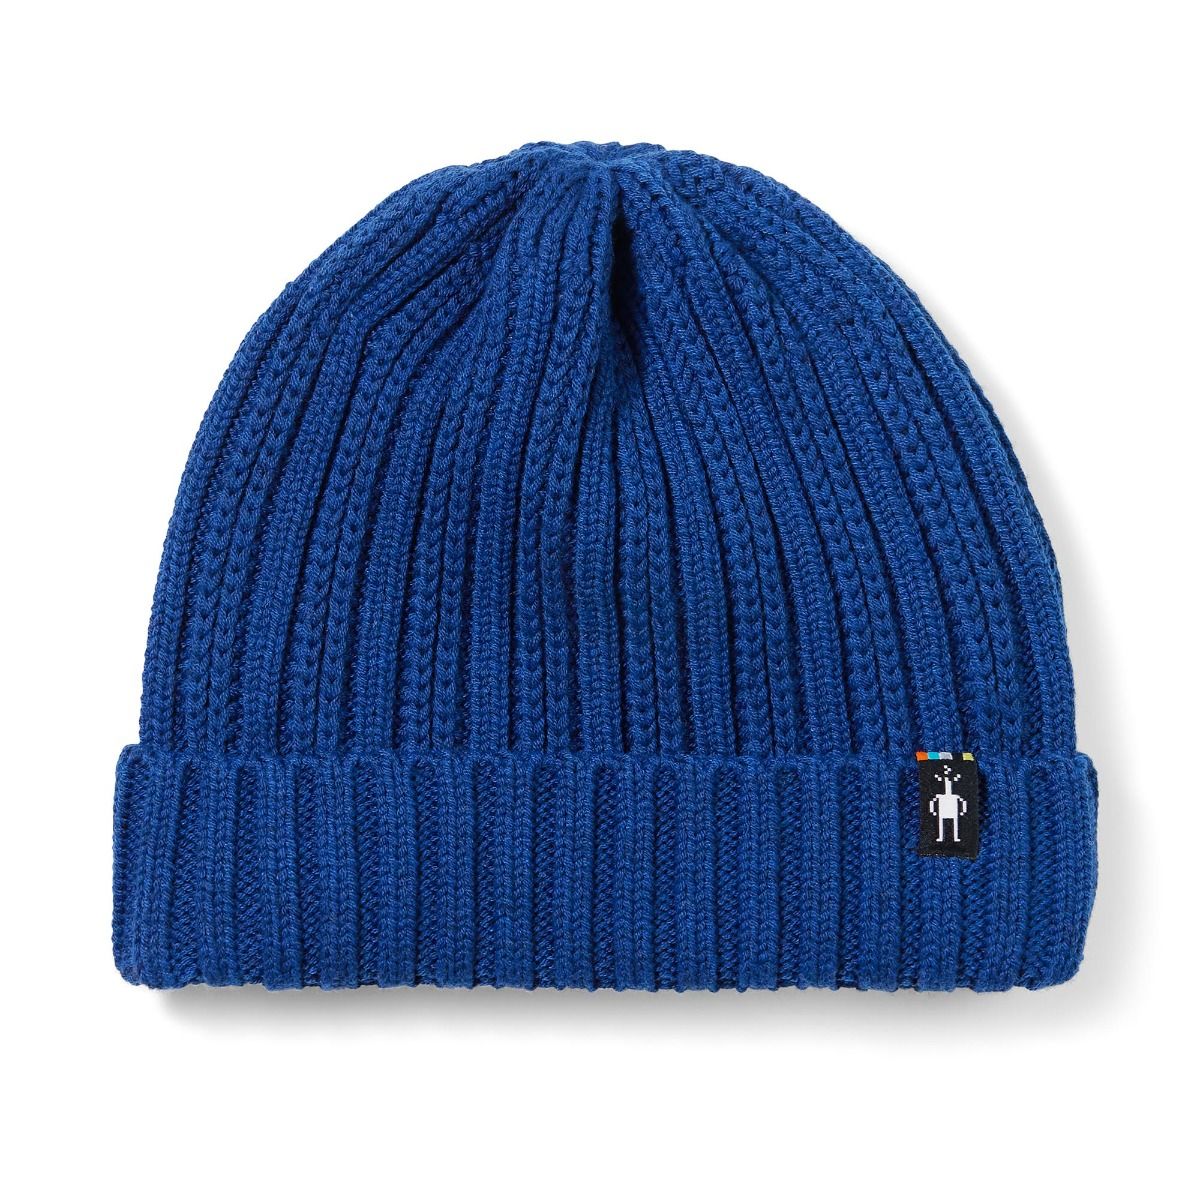 Wool Men Hats Warm Wool Woven Hats. Iwinter (Color : Blue, Size : 55CM)